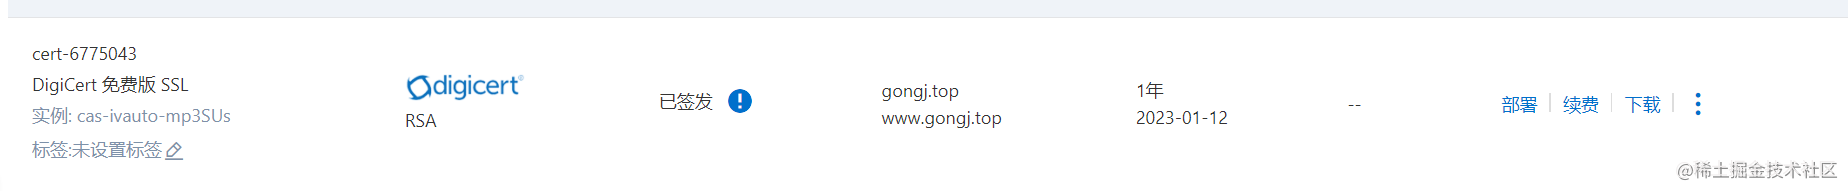 Nginx配置https证书-开源基础软件社区